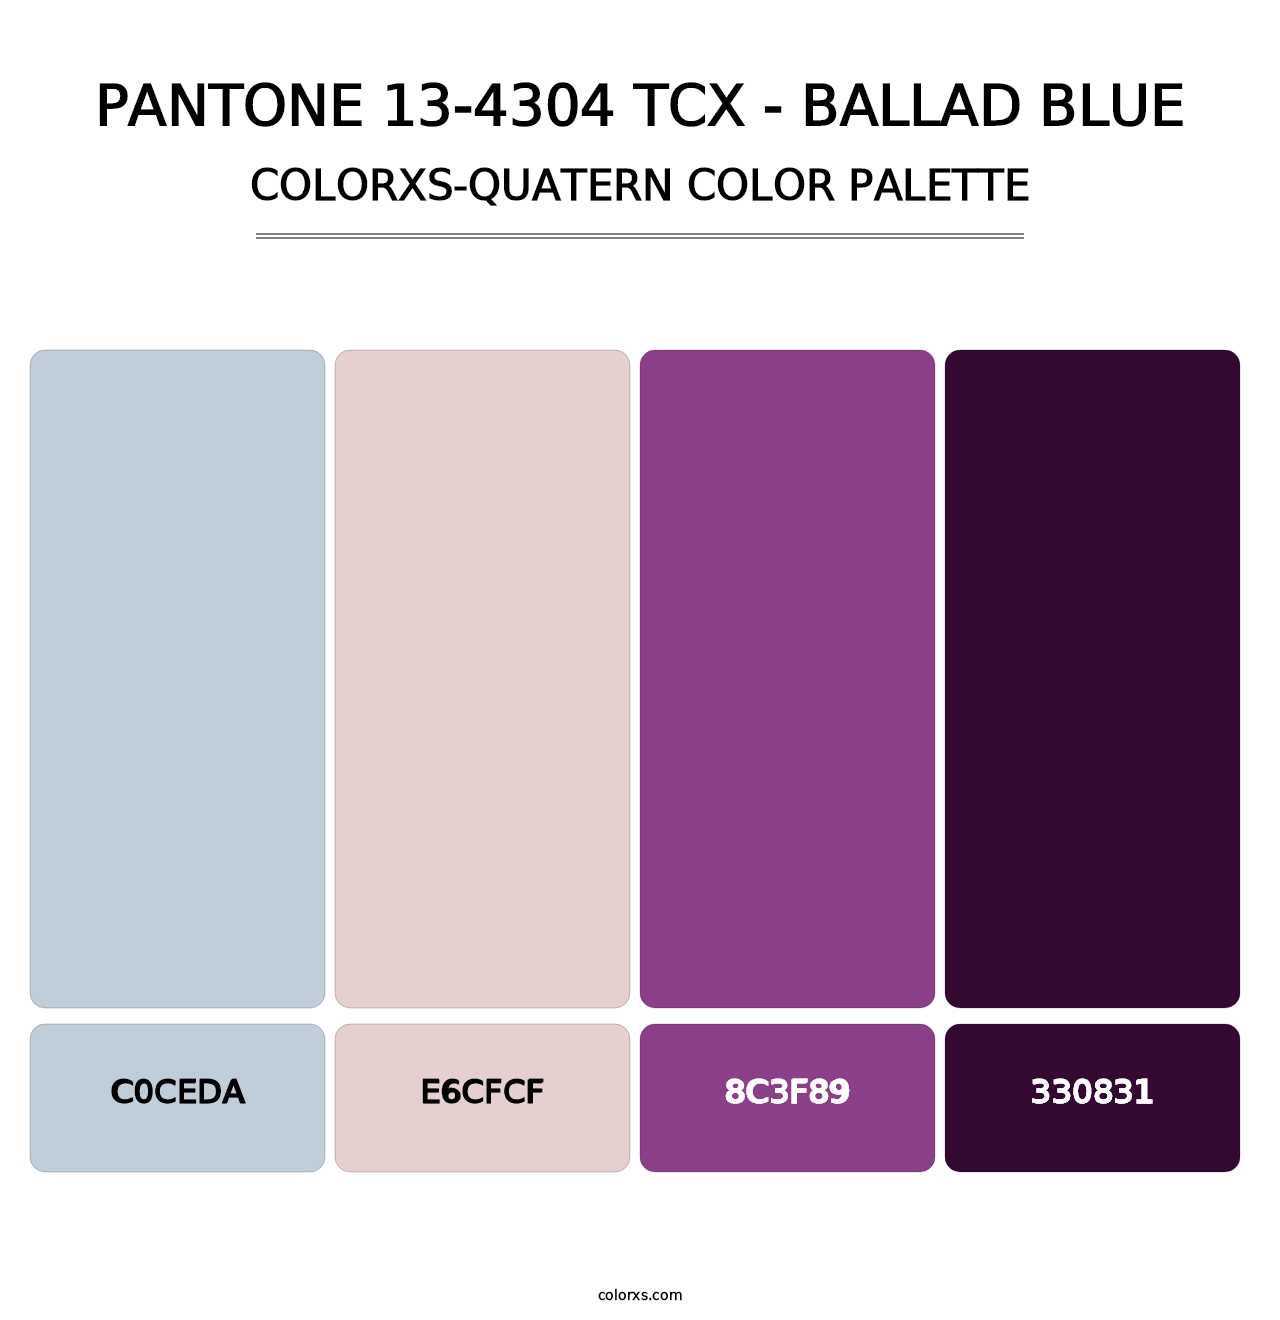 PANTONE 13-4304 TCX - Ballad Blue - Colorxs Quatern Palette